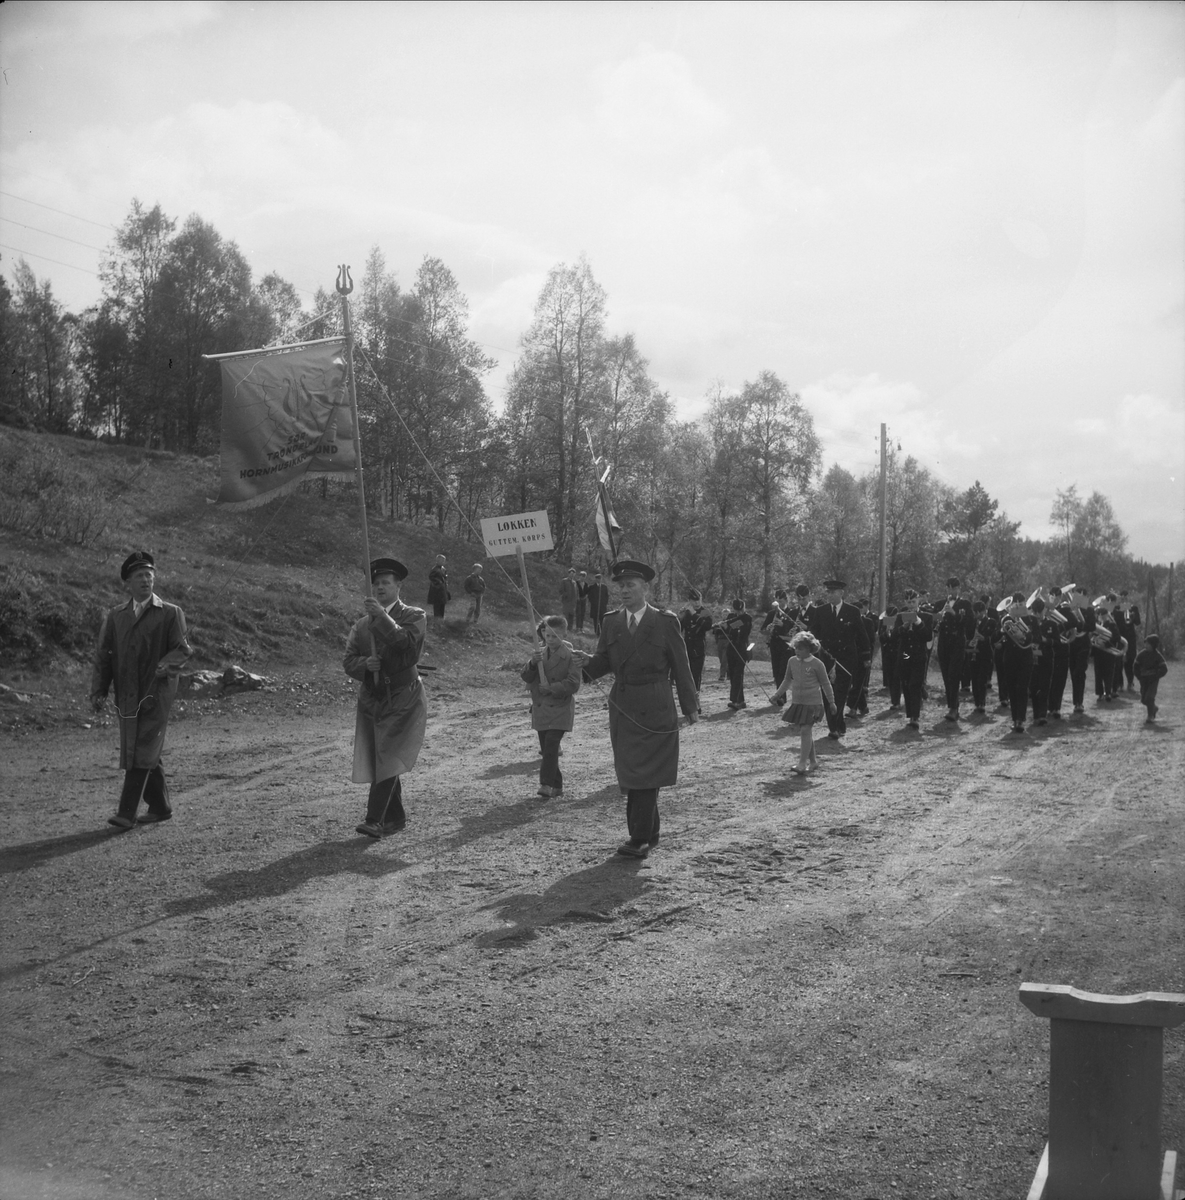 Løkken Guttemusikkorps marsjerer. Sør-Trøndelag Hormusikkforbund med fane foran.
Musikkstevne 1957 ved Festiviteten på Løkken.